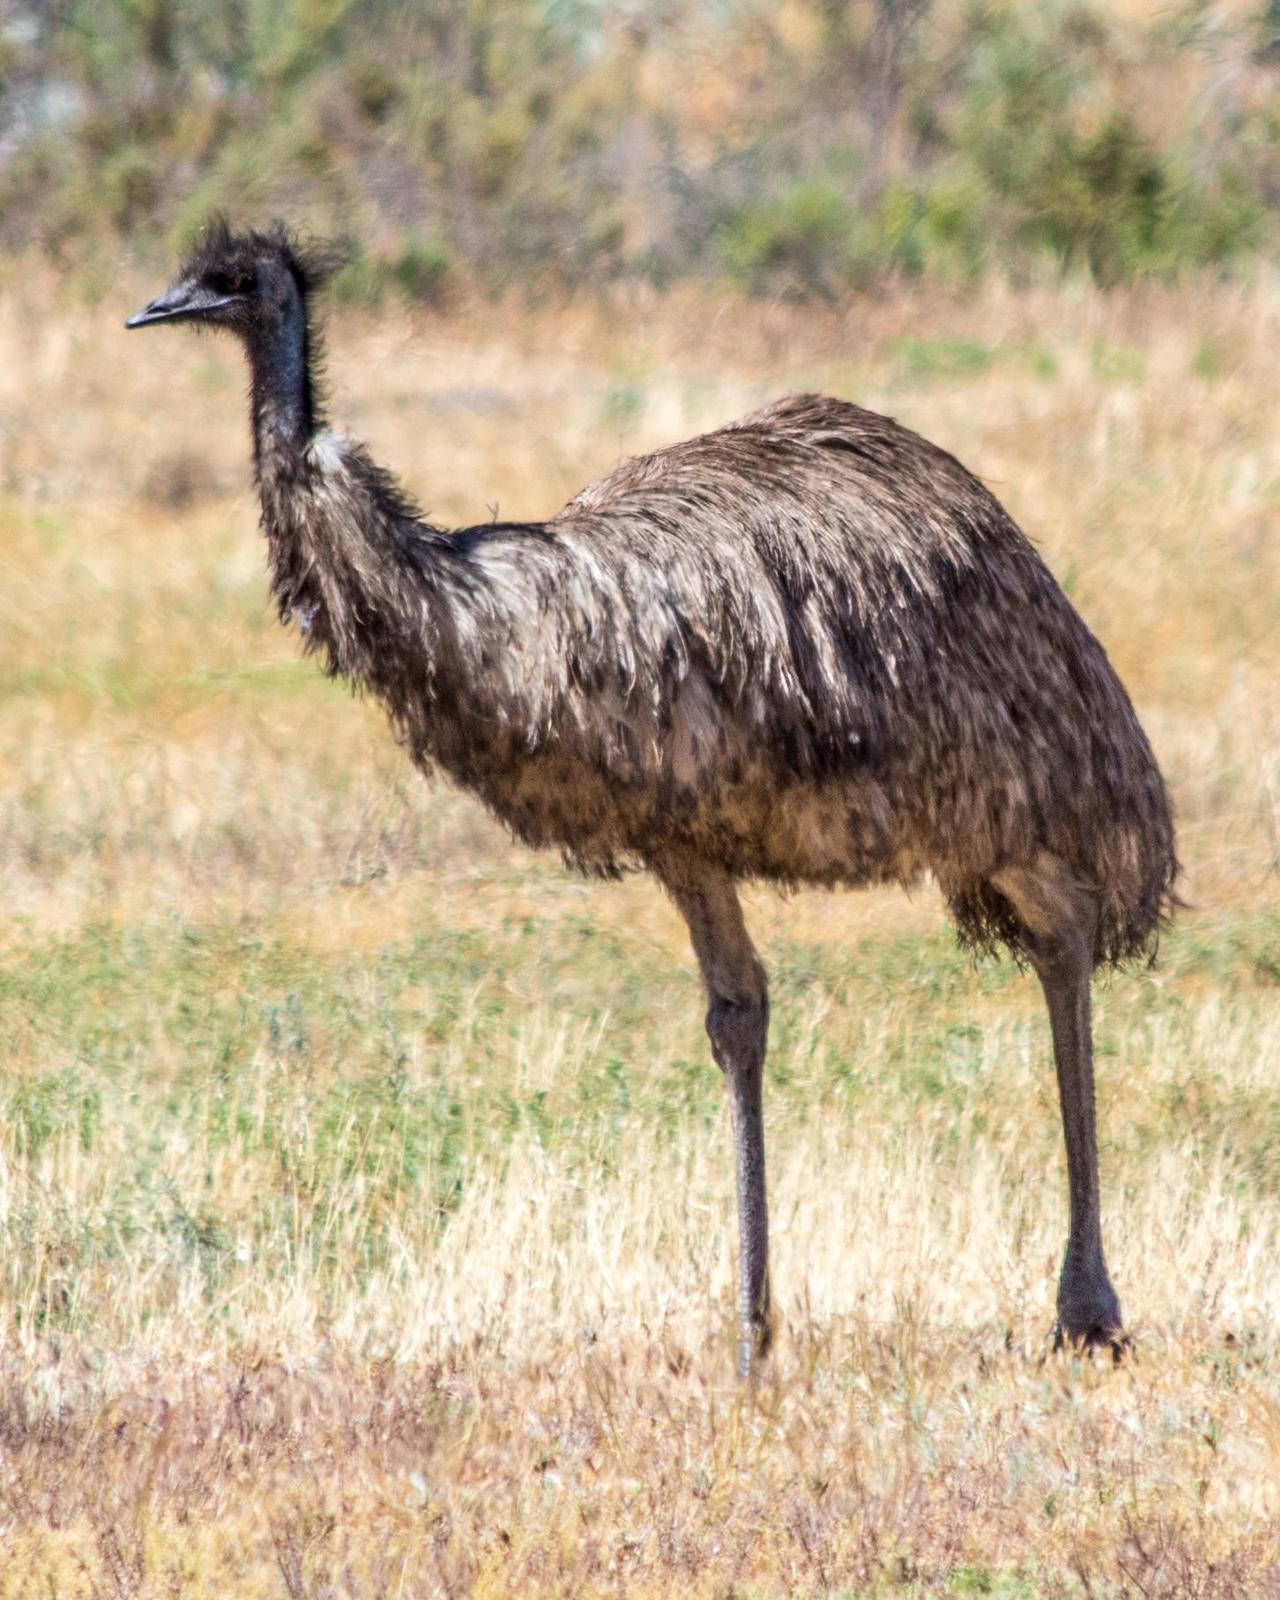 Emu Photo by Mark Baldwin